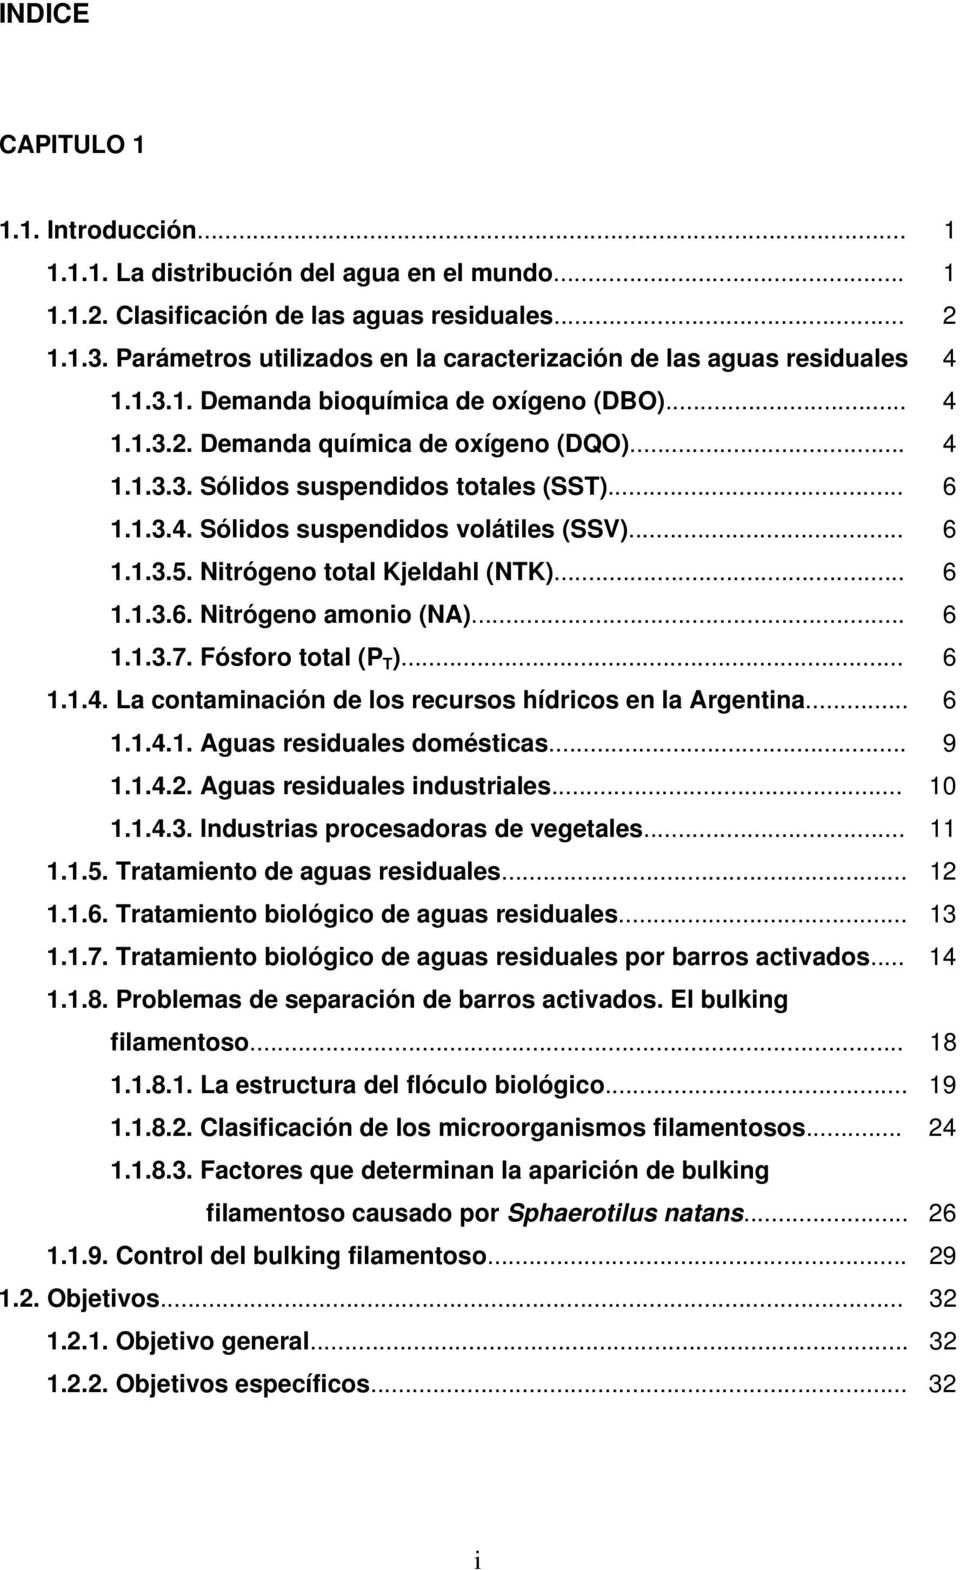 .. 6 1.1.3.4. Sólidos suspendidos volátiles (SSV)... 6 1.1.3.5. Nitrógeno total Kjeldahl (NTK)... 6 1.1.3.6. Nitrógeno amonio (NA)... 6 1.1.3.7. Fósforo total (P T )... 6 1.1.4. La contaminación de los recursos hídricos en la Argentina.